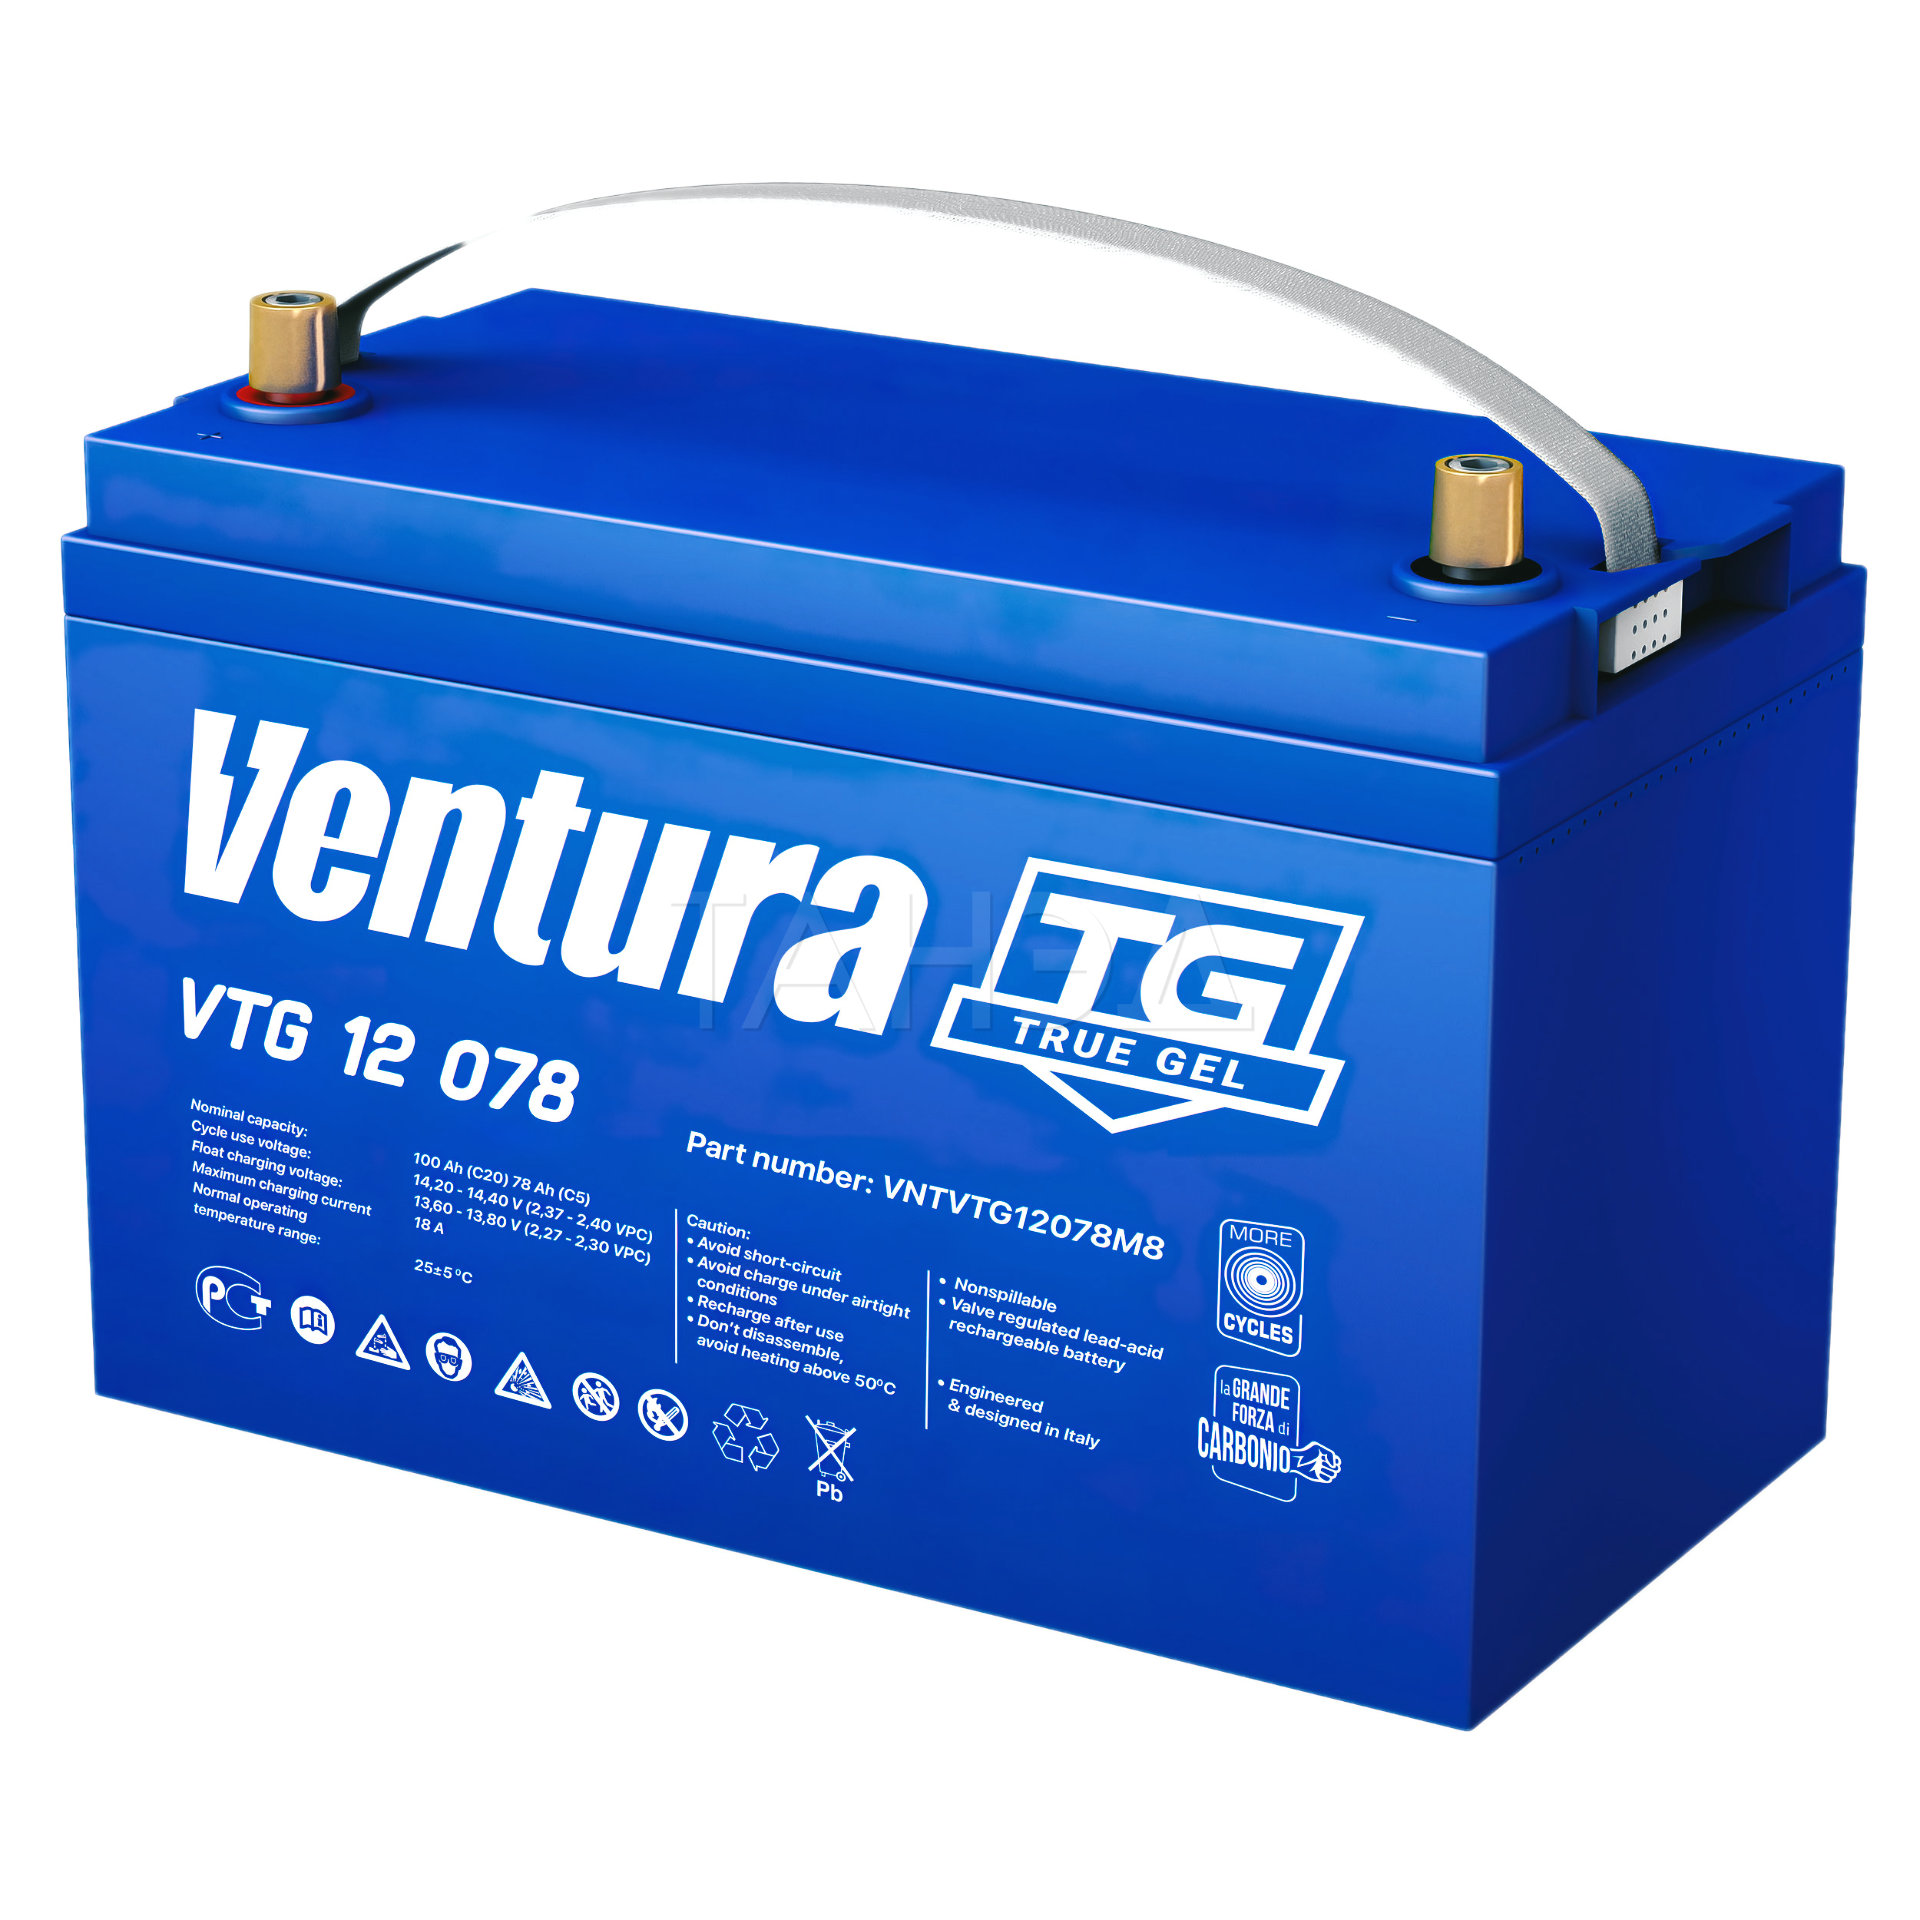 Гелевый аккумулятор Ventura VTG 12 078 M8